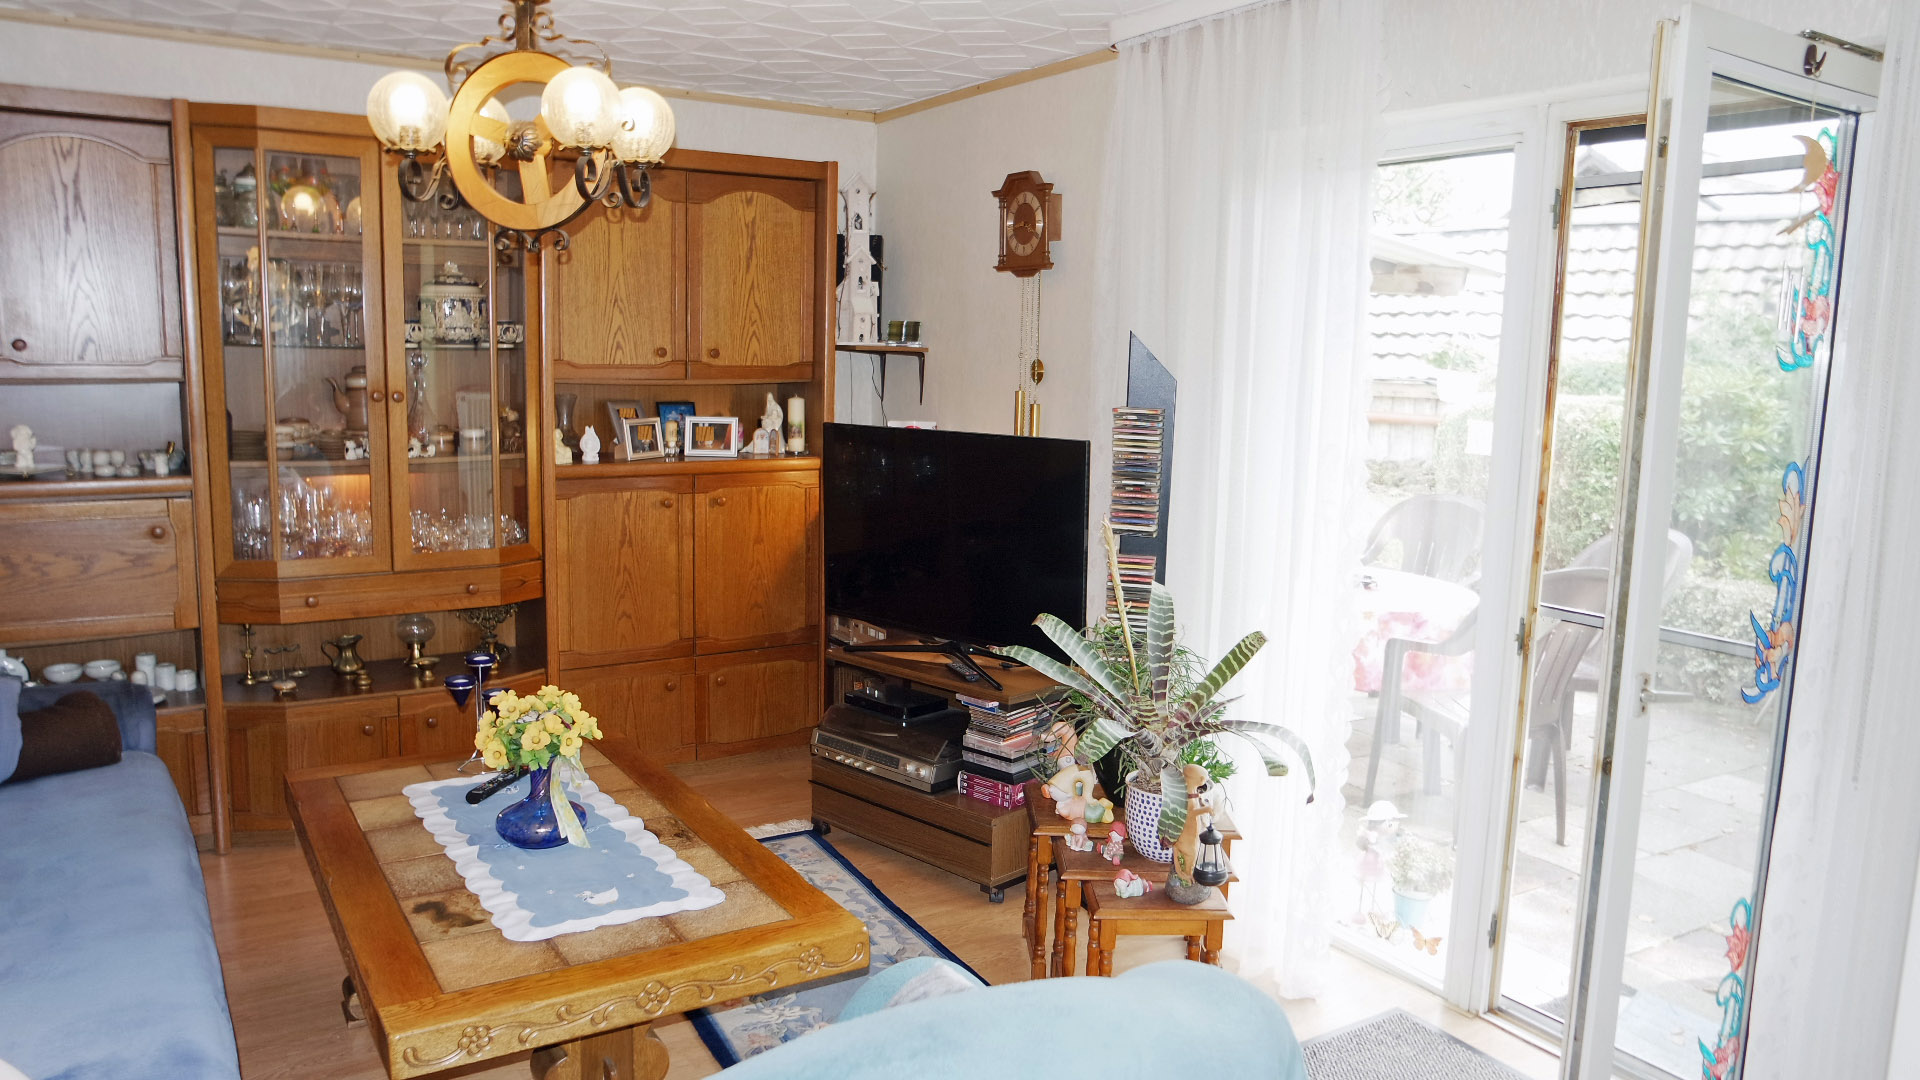 Verkauft: Einfamilienhaus mit Garage, ...Wohnzimmer (15 m²) mit angrenzender Terrasse